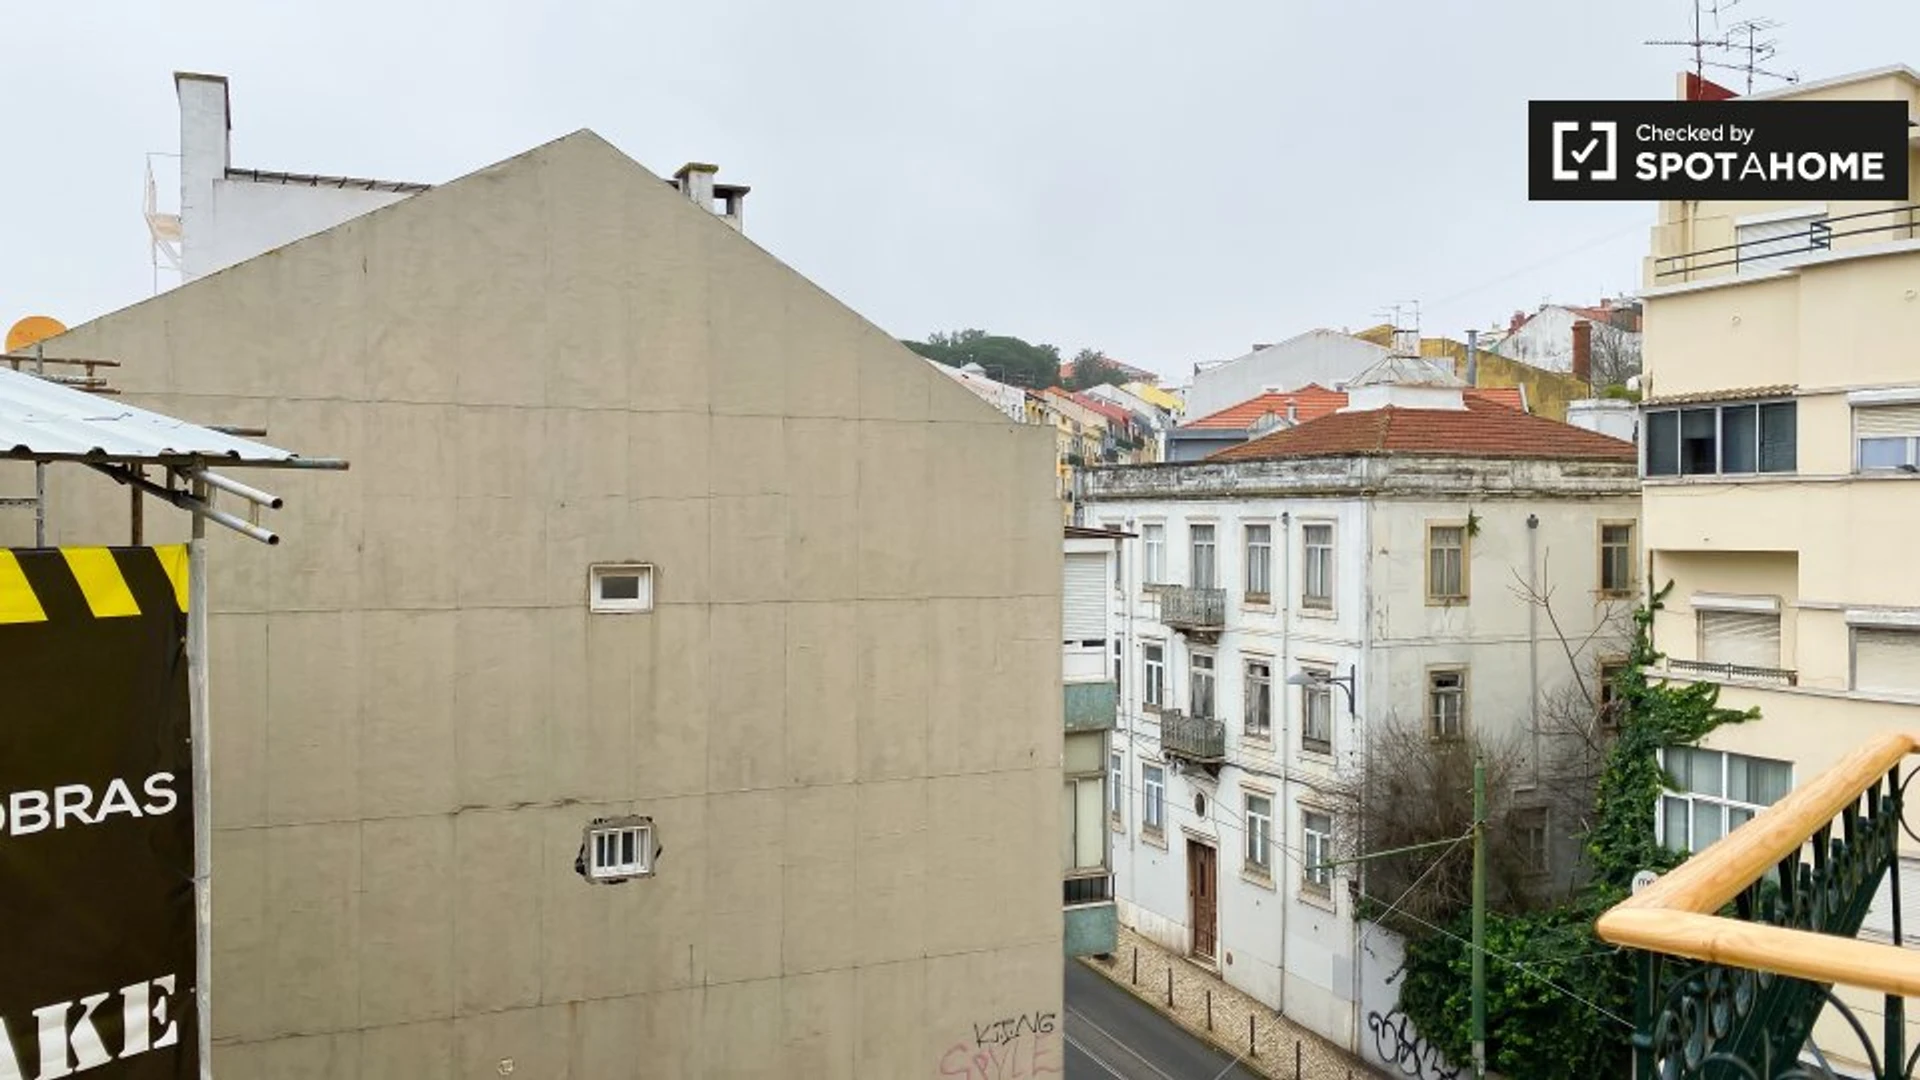 Chambre à louer dans un appartement en colocation à Lisbonne